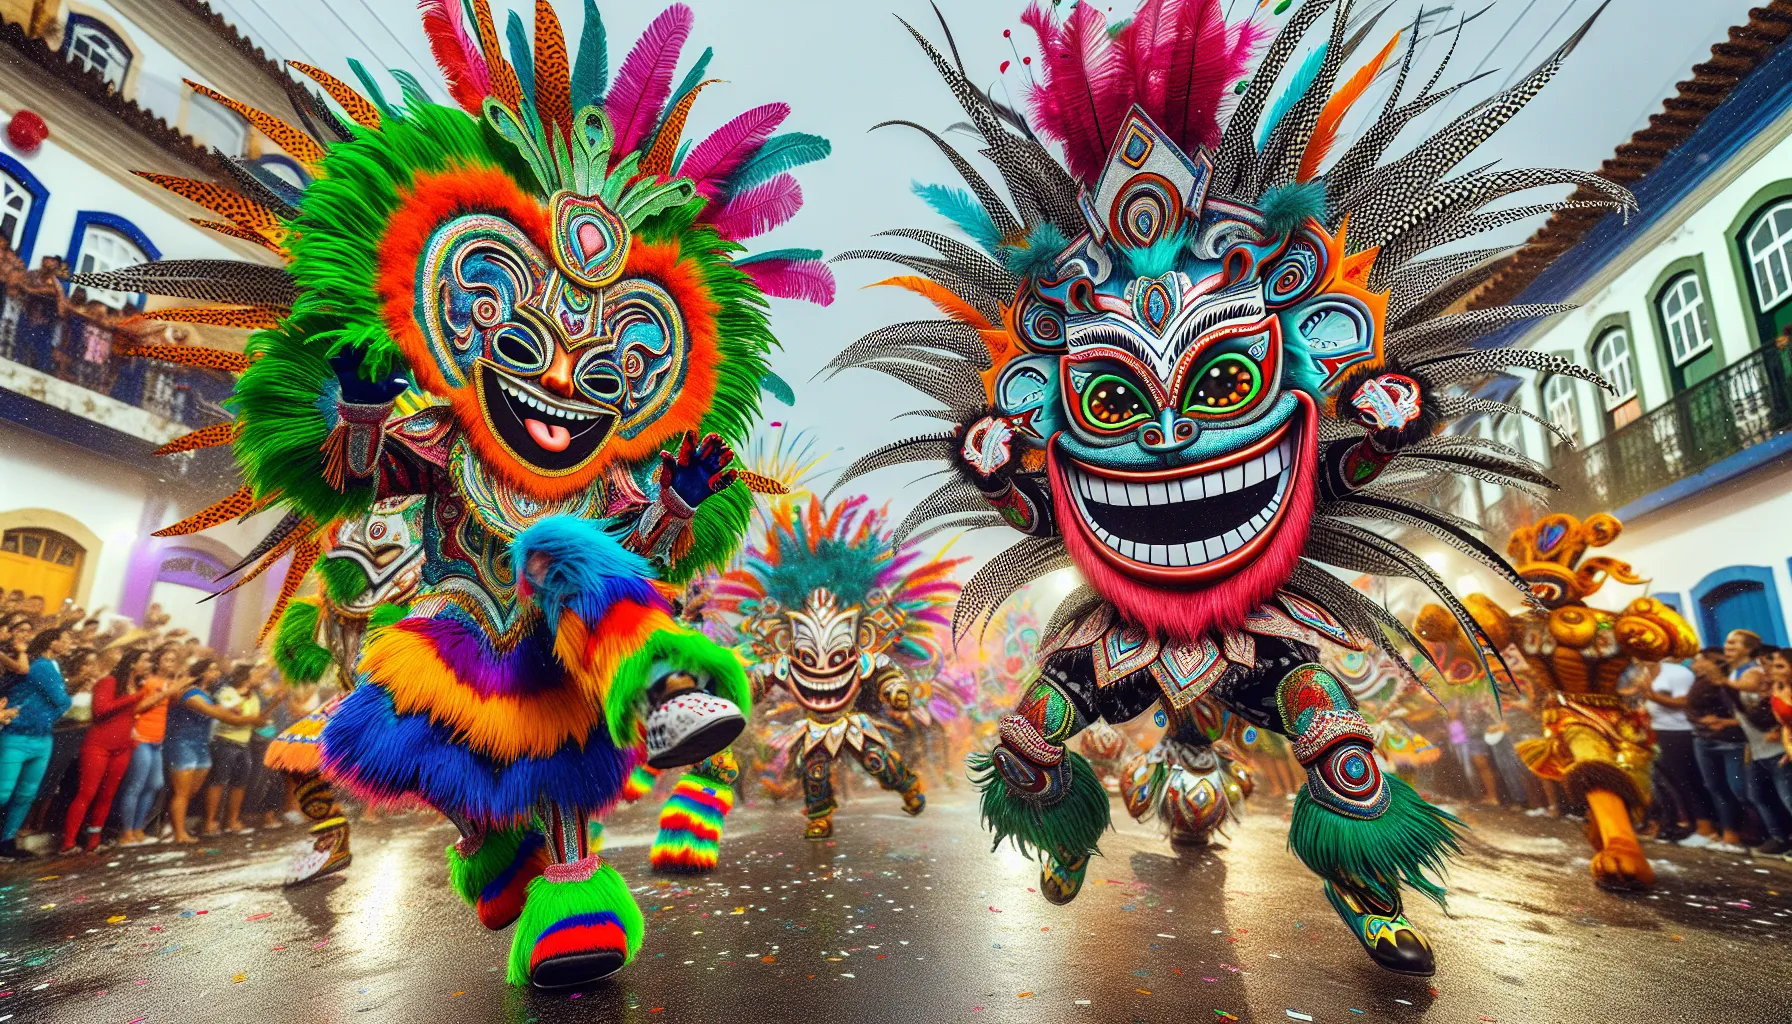 Parintins é uma cidade localizada no estado do Amazonas, no Brasil, e é famosa por suas festas tradicionais únicas. As festas de Parintins são conhecidas como Festival Folclórico de Parintins ou Festival de Boi-Bumbá.

O Festival Folclórico de Parintins acontece todos os anos no último fim de semana de junho, em comemoração aos santos padroeiros da cidade, São